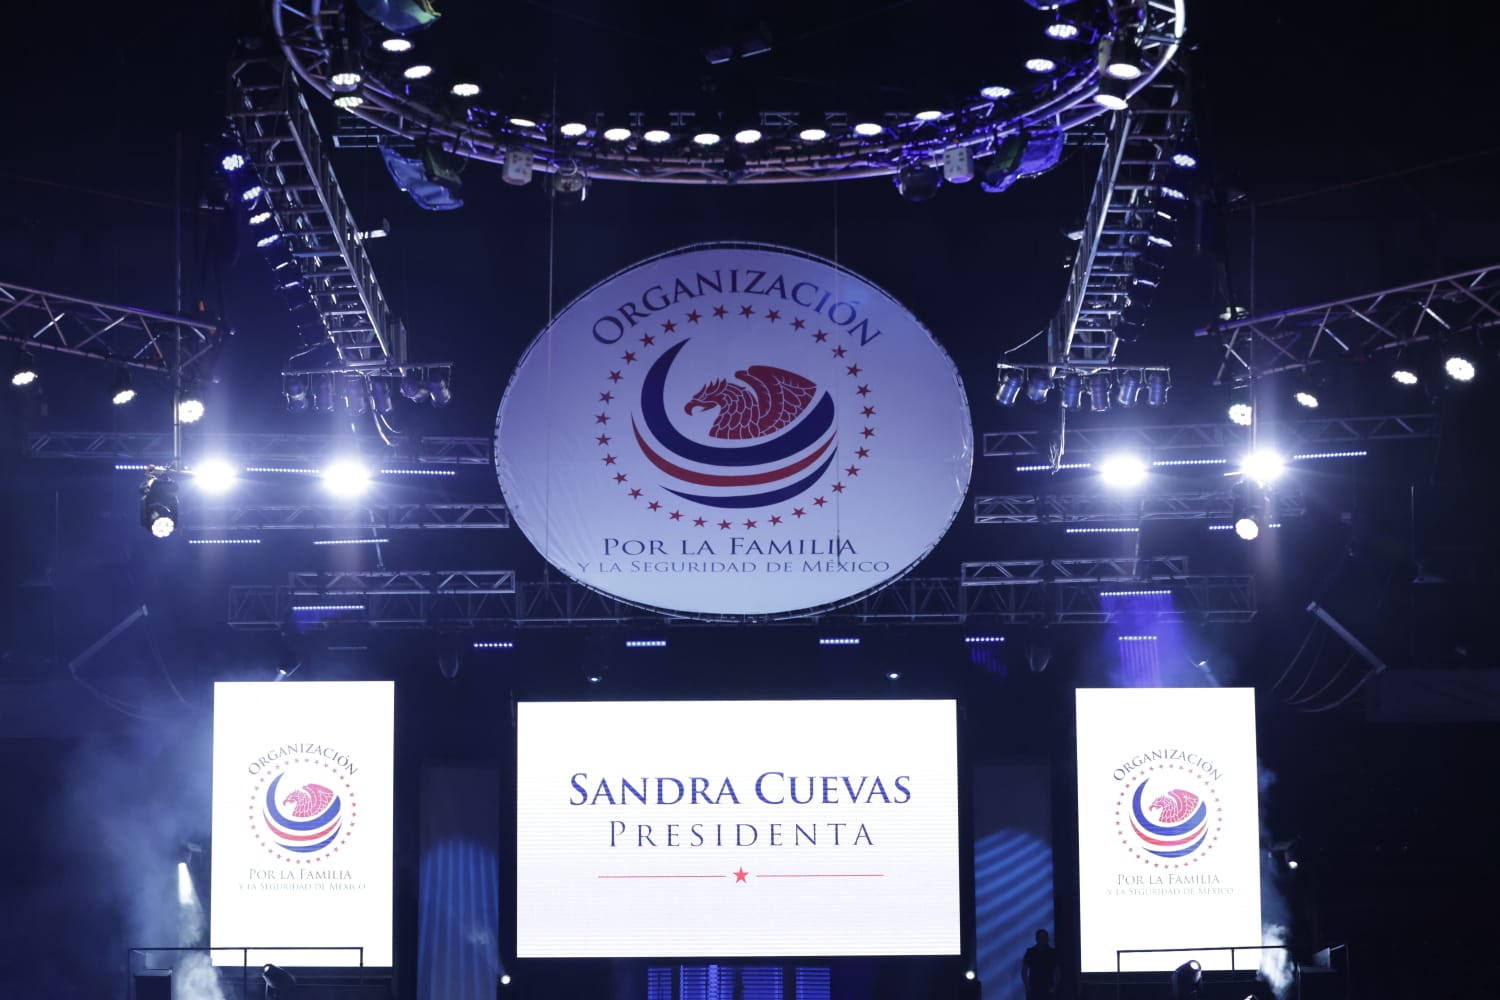 Sandra Cuevas presenta organización política rumbo a 2030